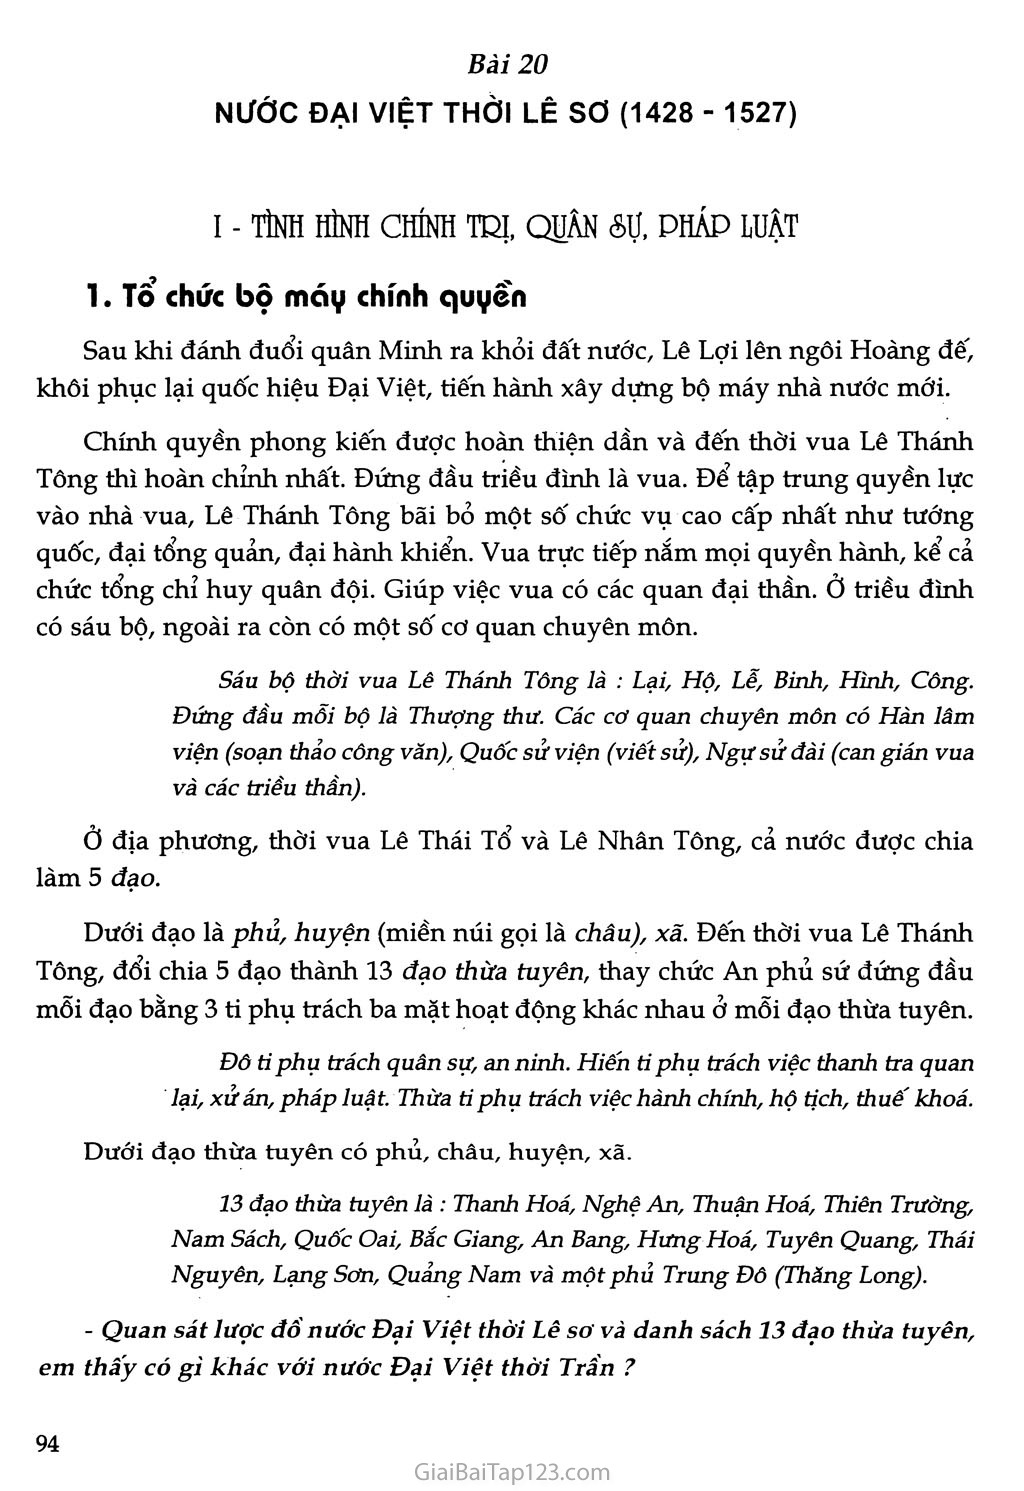 Bài 20 - Nước Đại Việt thời Lê sơ (1428 - 1527) trang 1